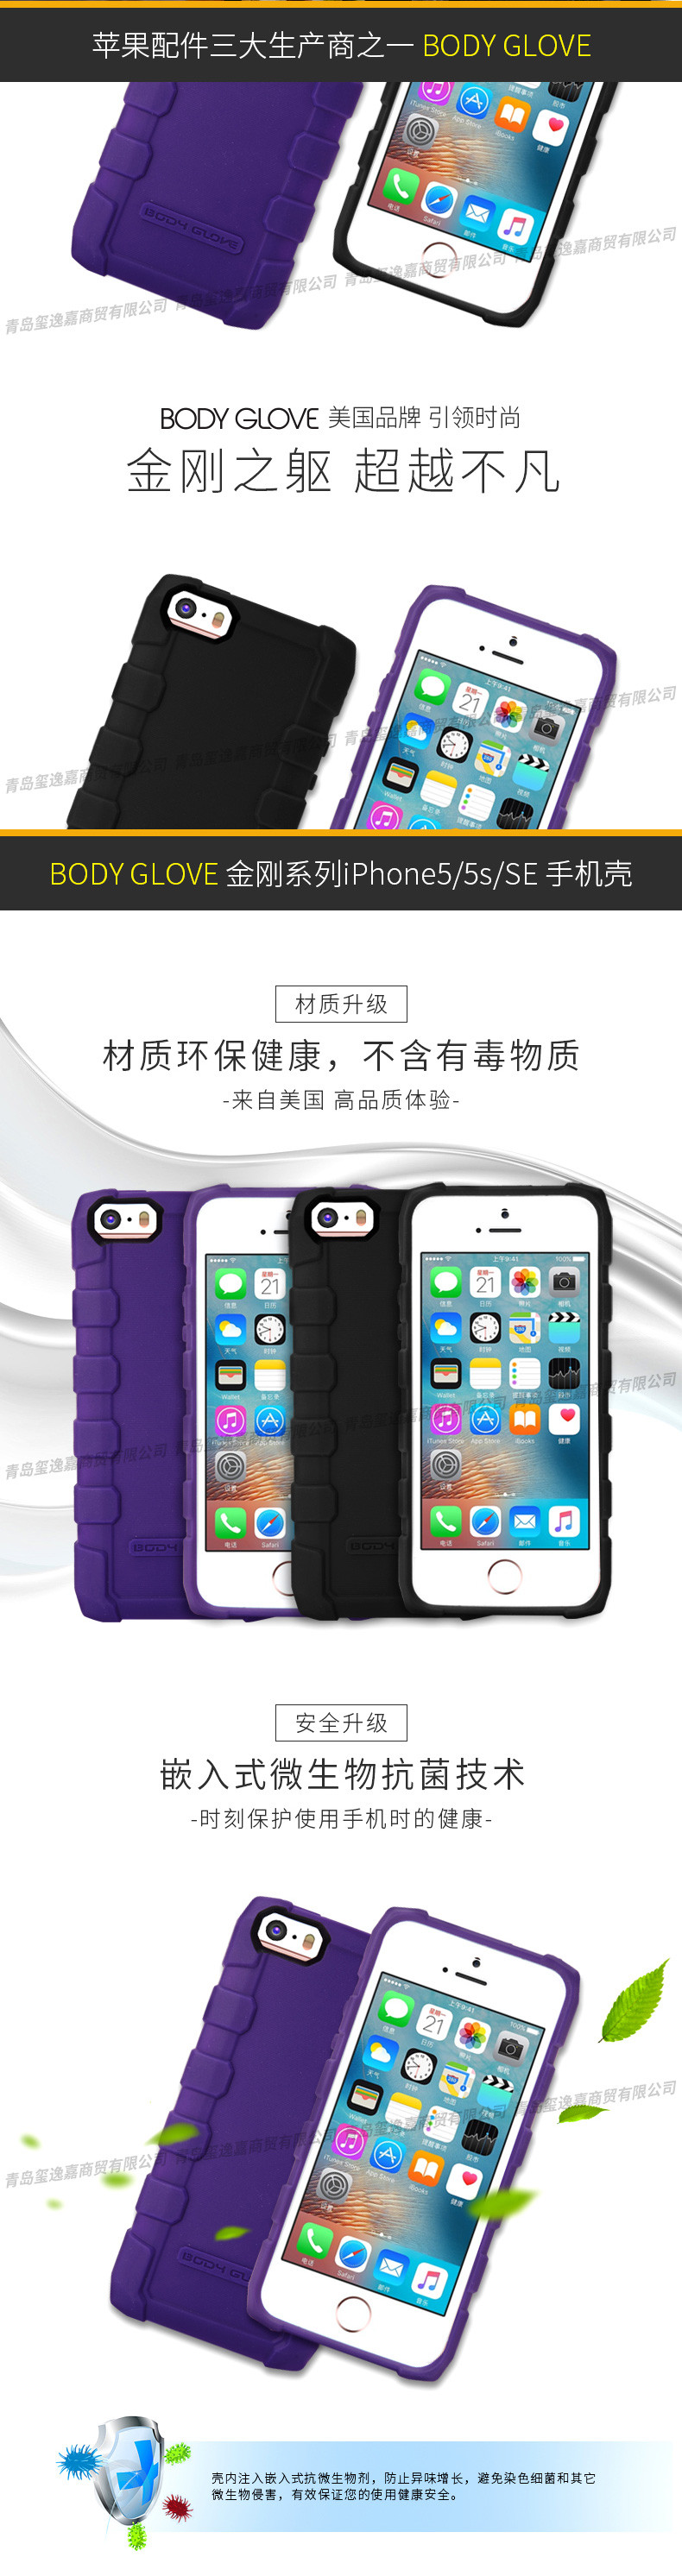 范罗士/Fellowes iPhone5/5s防震手机壳 防震保护壳 苹果手机壳